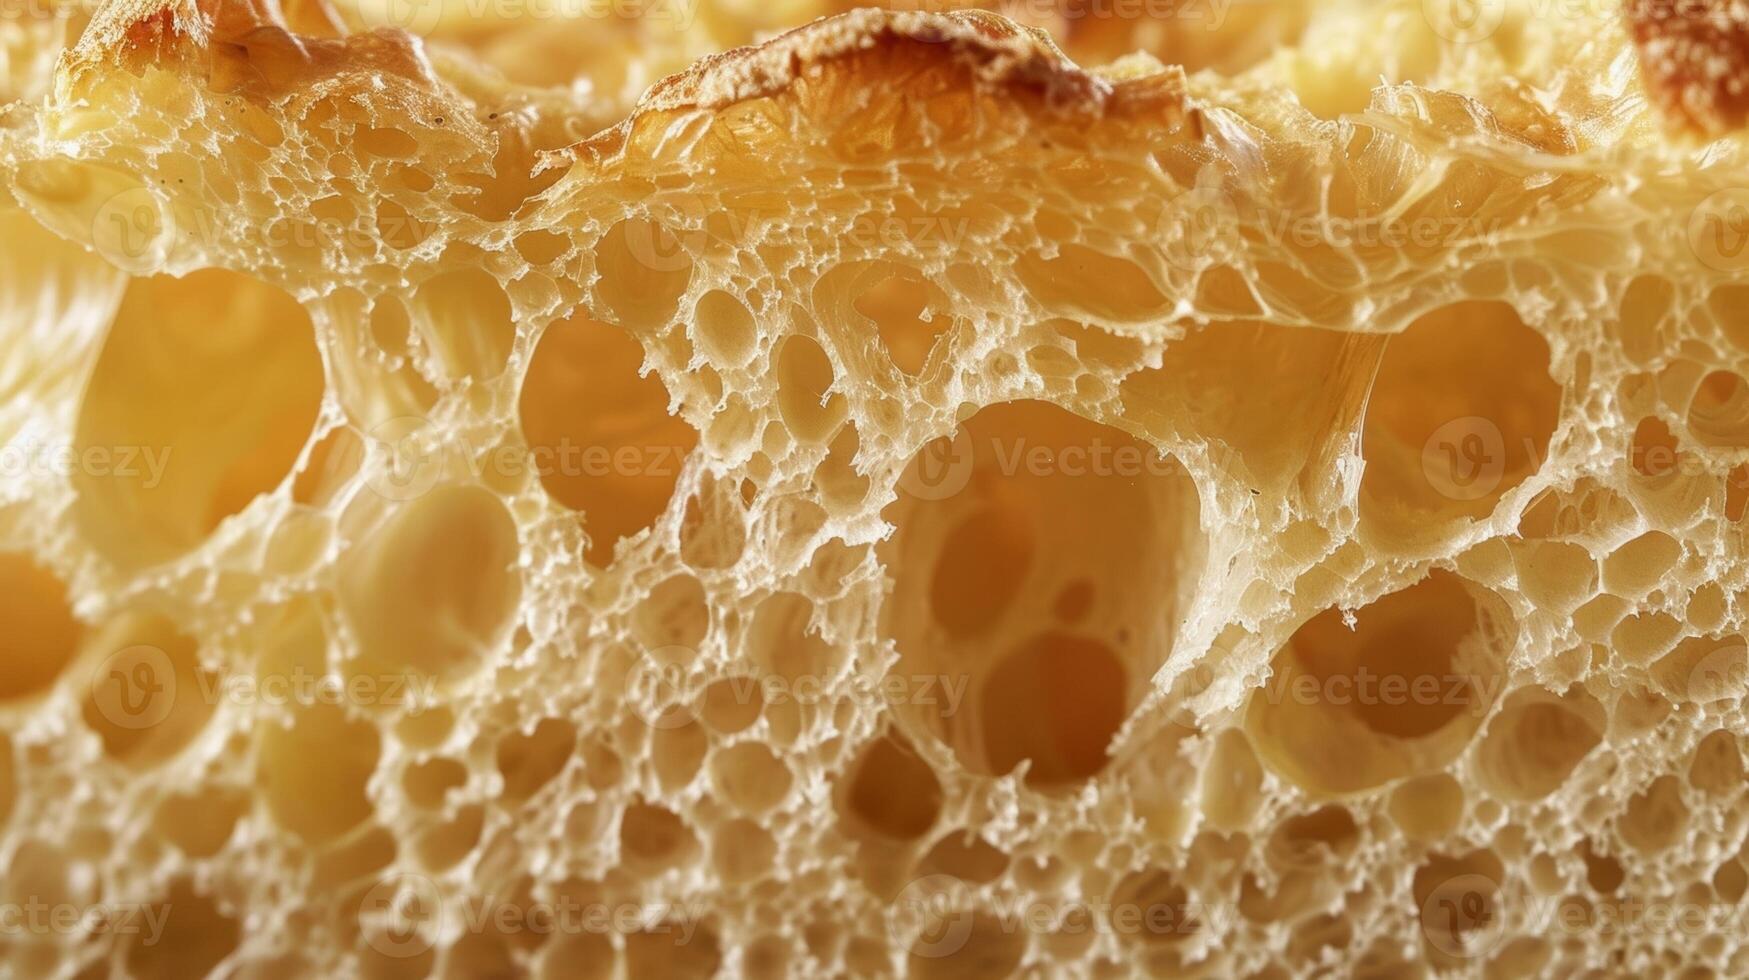 en närbild av en korsa sektion av en limpa av bröd avslöjande dess luftig hålig strukturera och gyllene Krispig skorpa foto